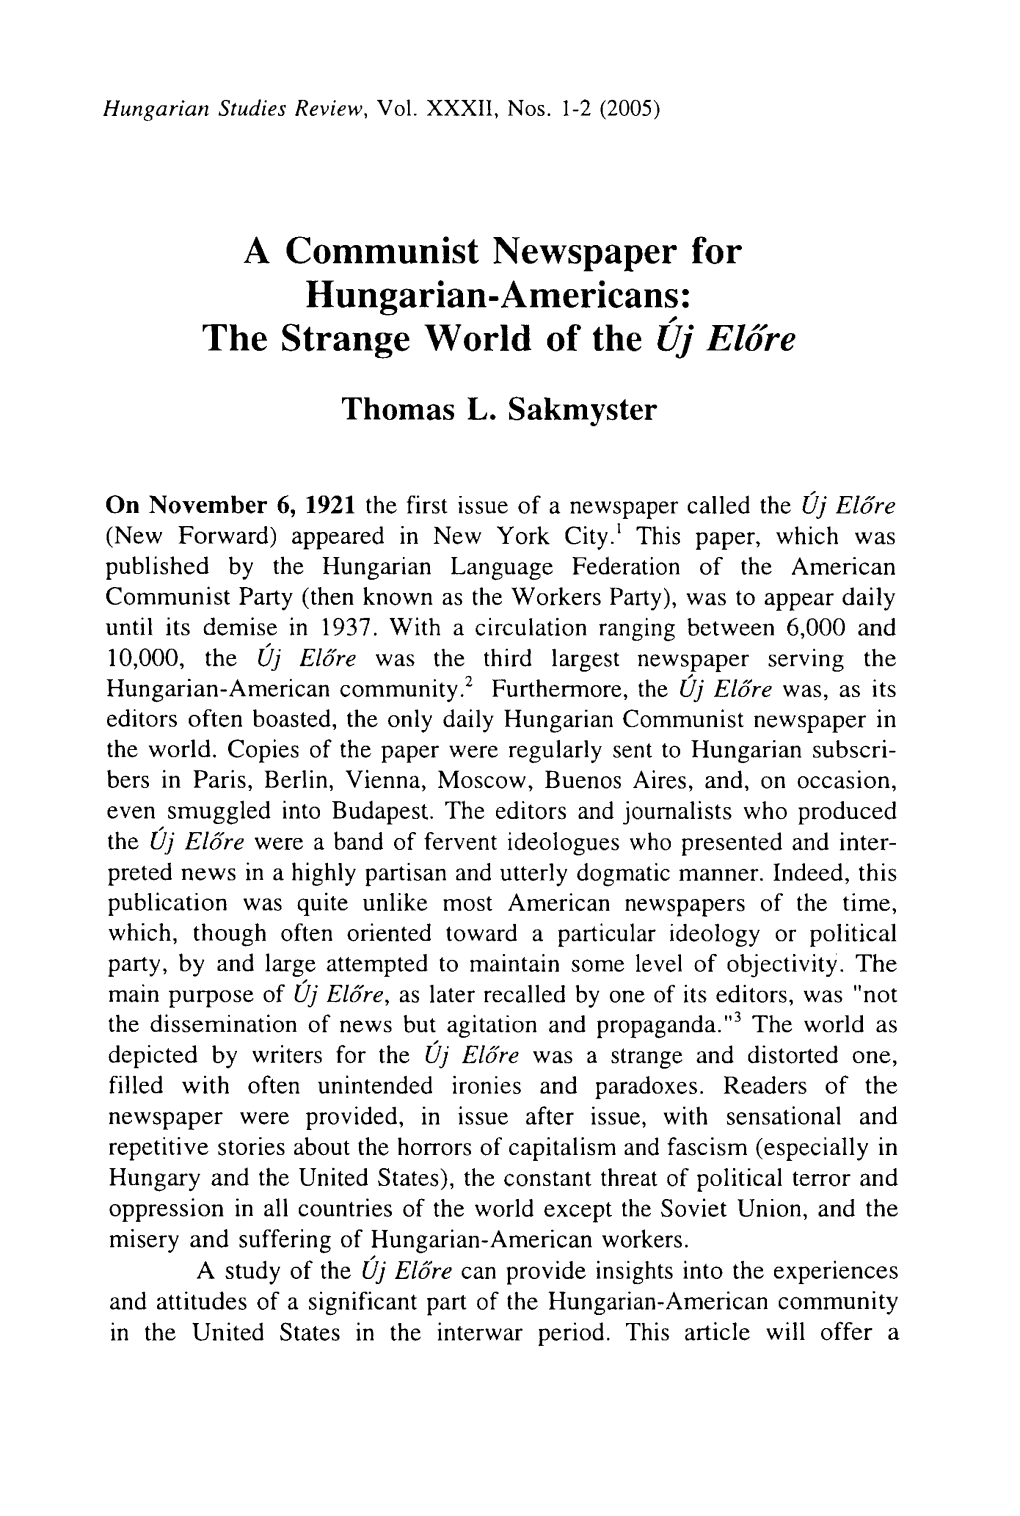 Hungarian Studies Review, 29, 1-2 (1992): 7-27